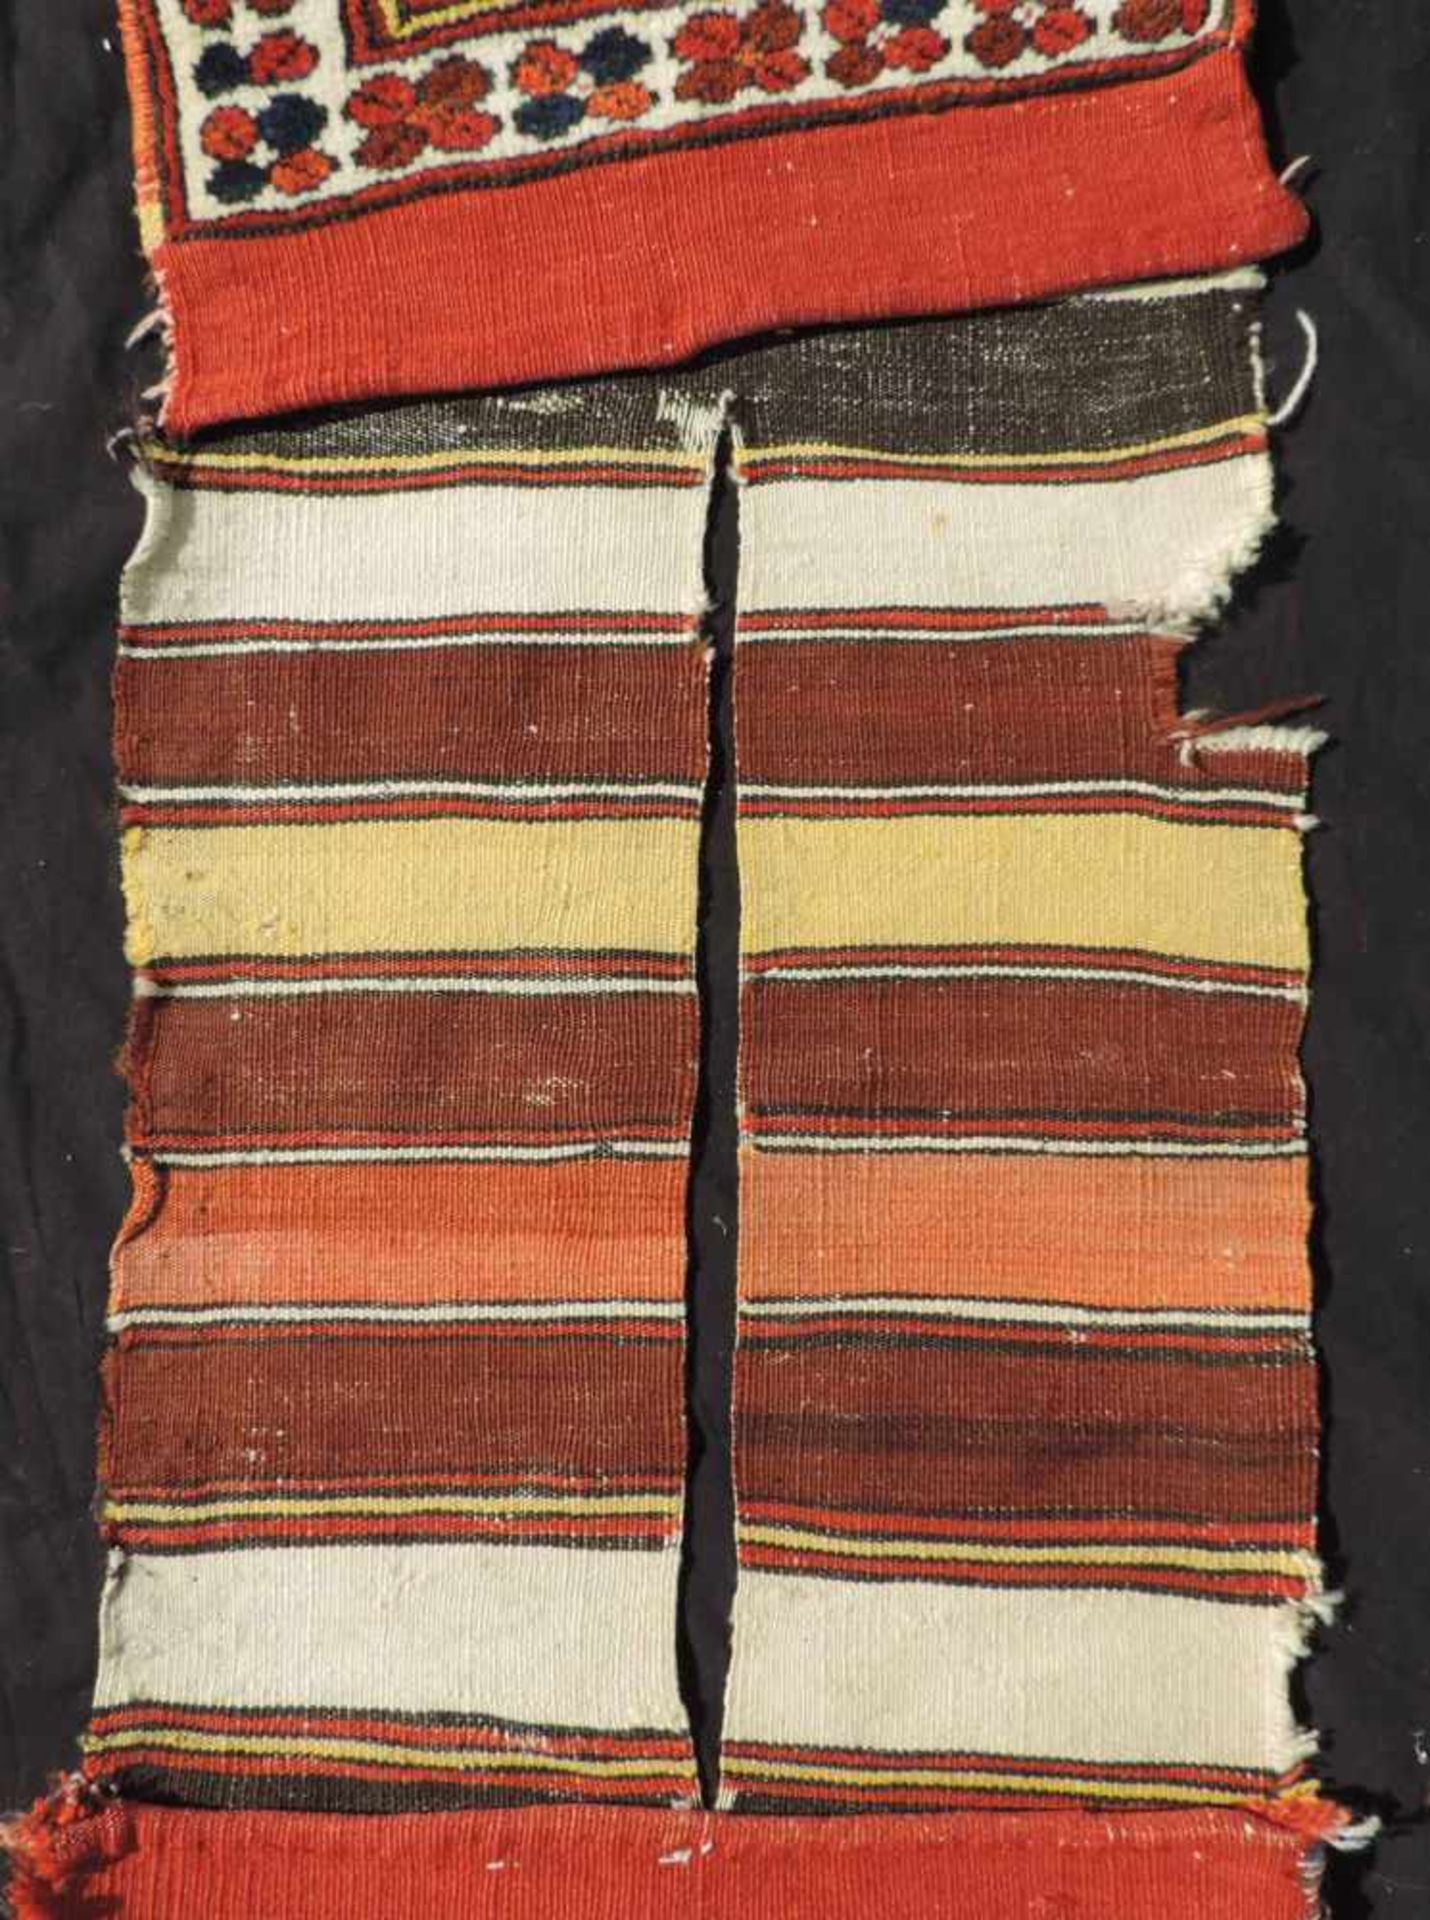 Bergama Hybe Stammesteppich. Doppeltasche. Türkei. Antik, 19. Jh. 140 cm x 44 cm. Handgeknüpfte - Bild 3 aus 6